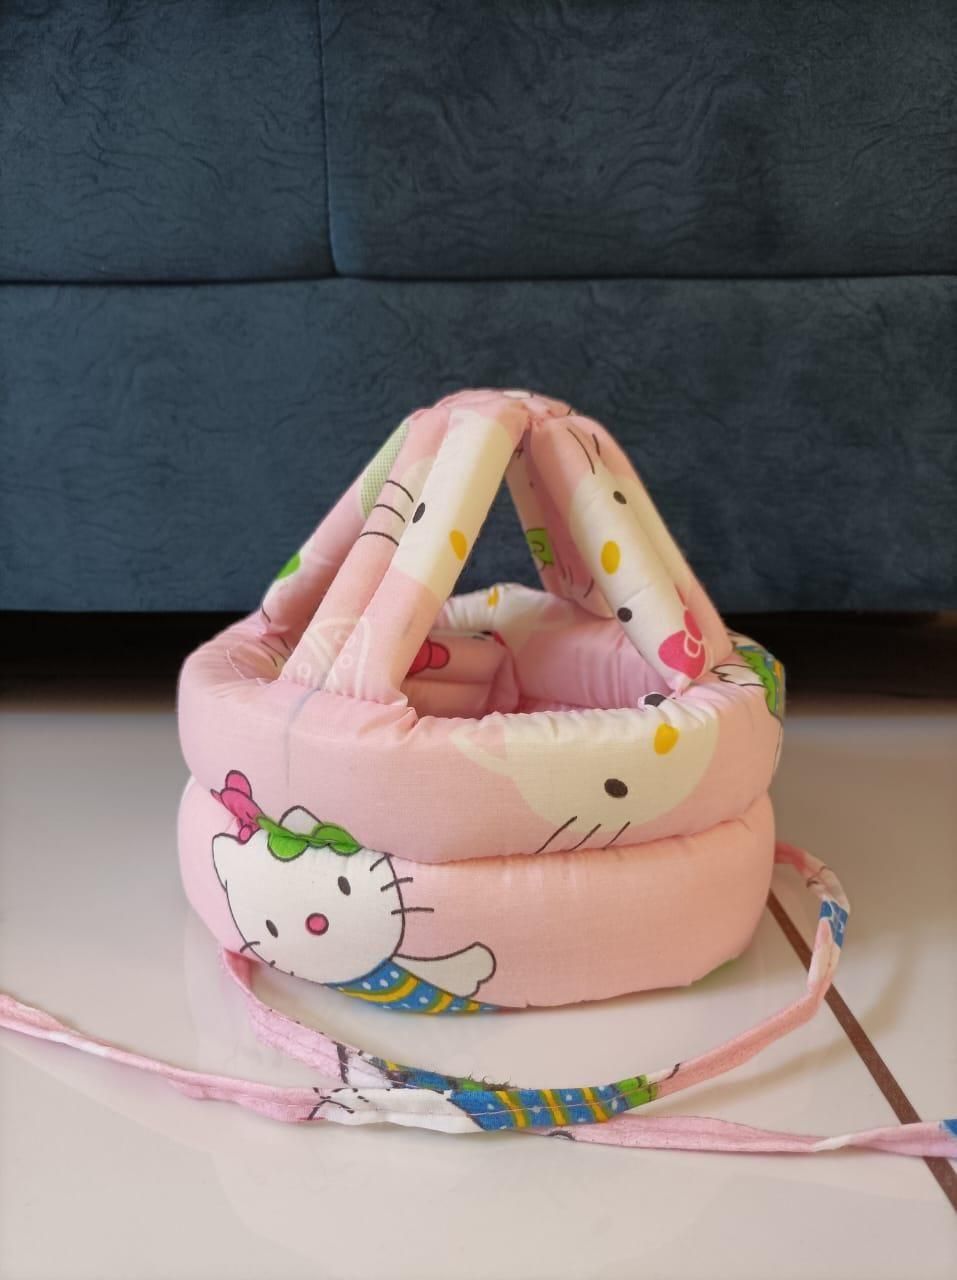 Baby  Head Protector Helmet